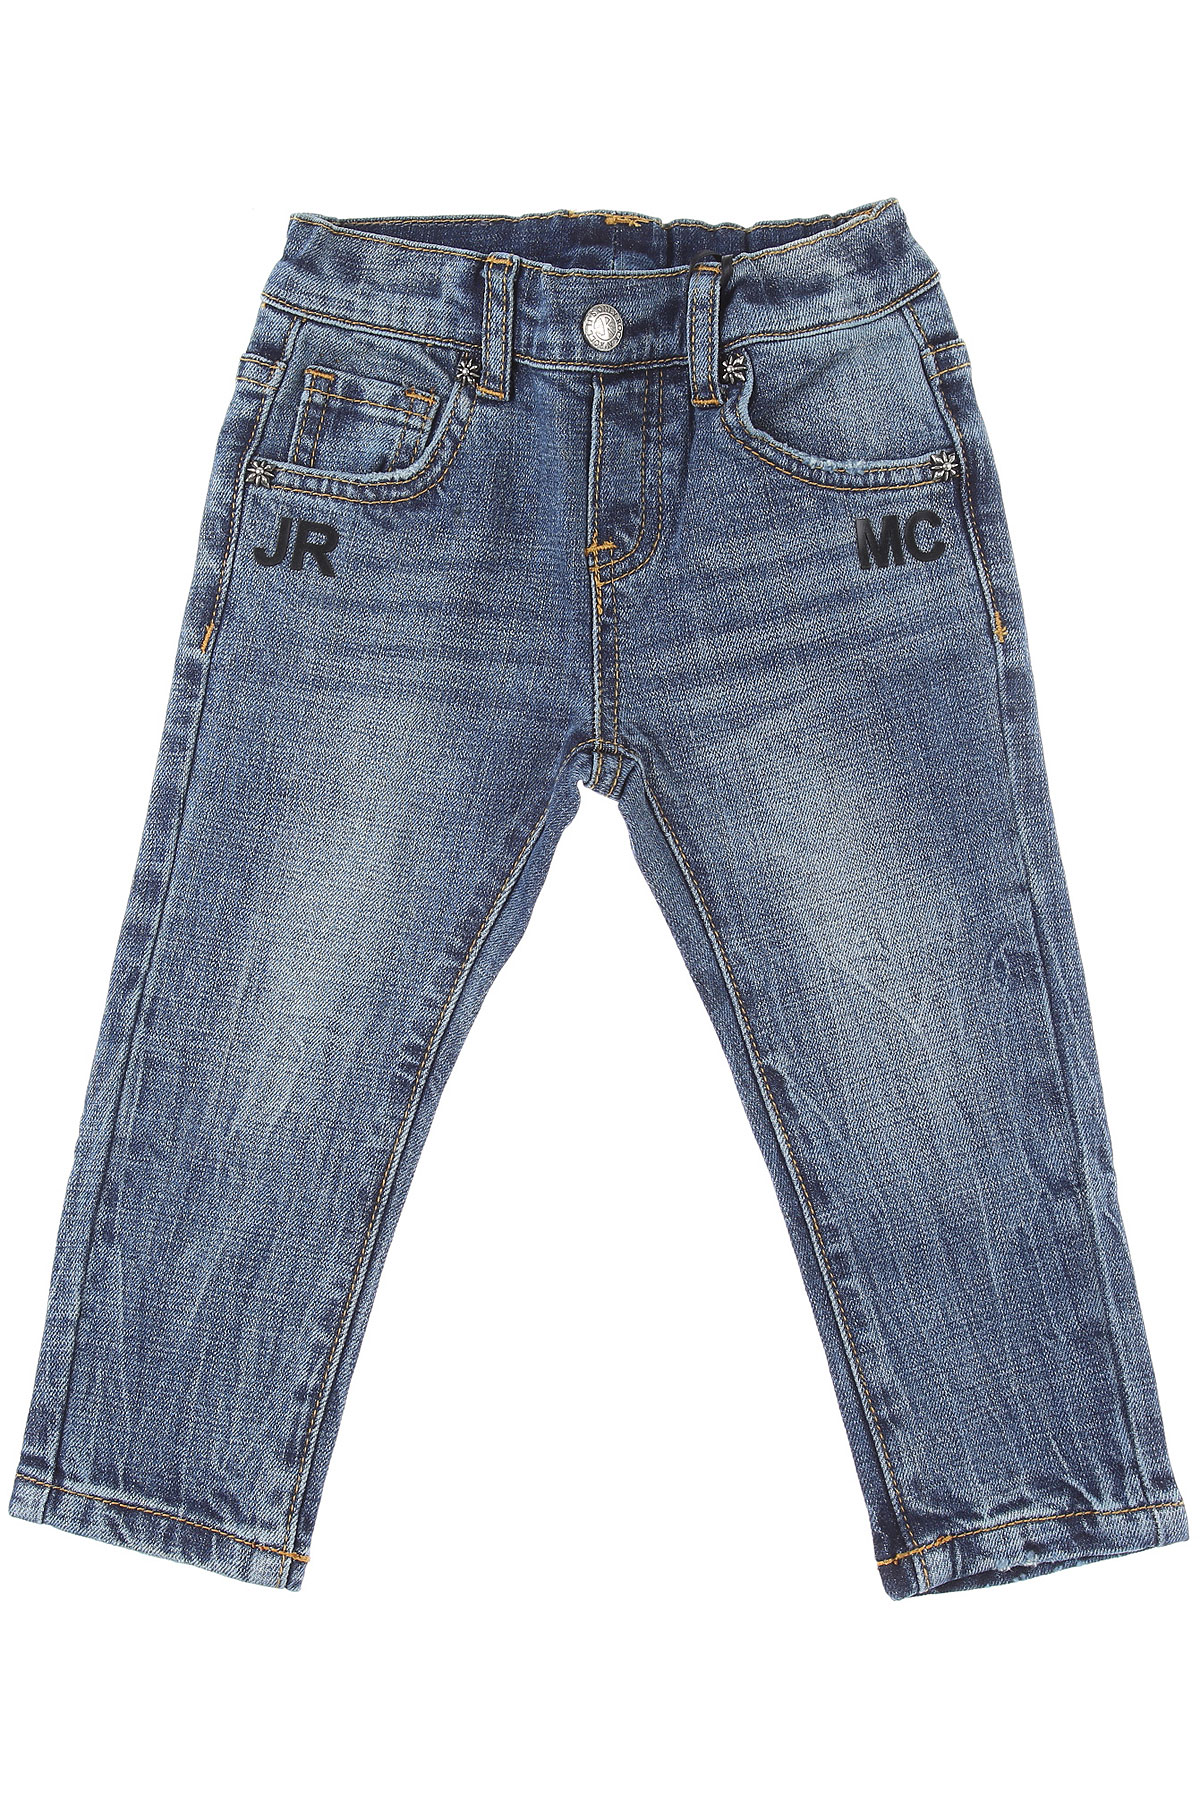 Richmond Baby Jeans für Jungen Günstig im Sale, Denim- Blau, Baumwolle, 2017, 12 M 18 M 2Y 3M